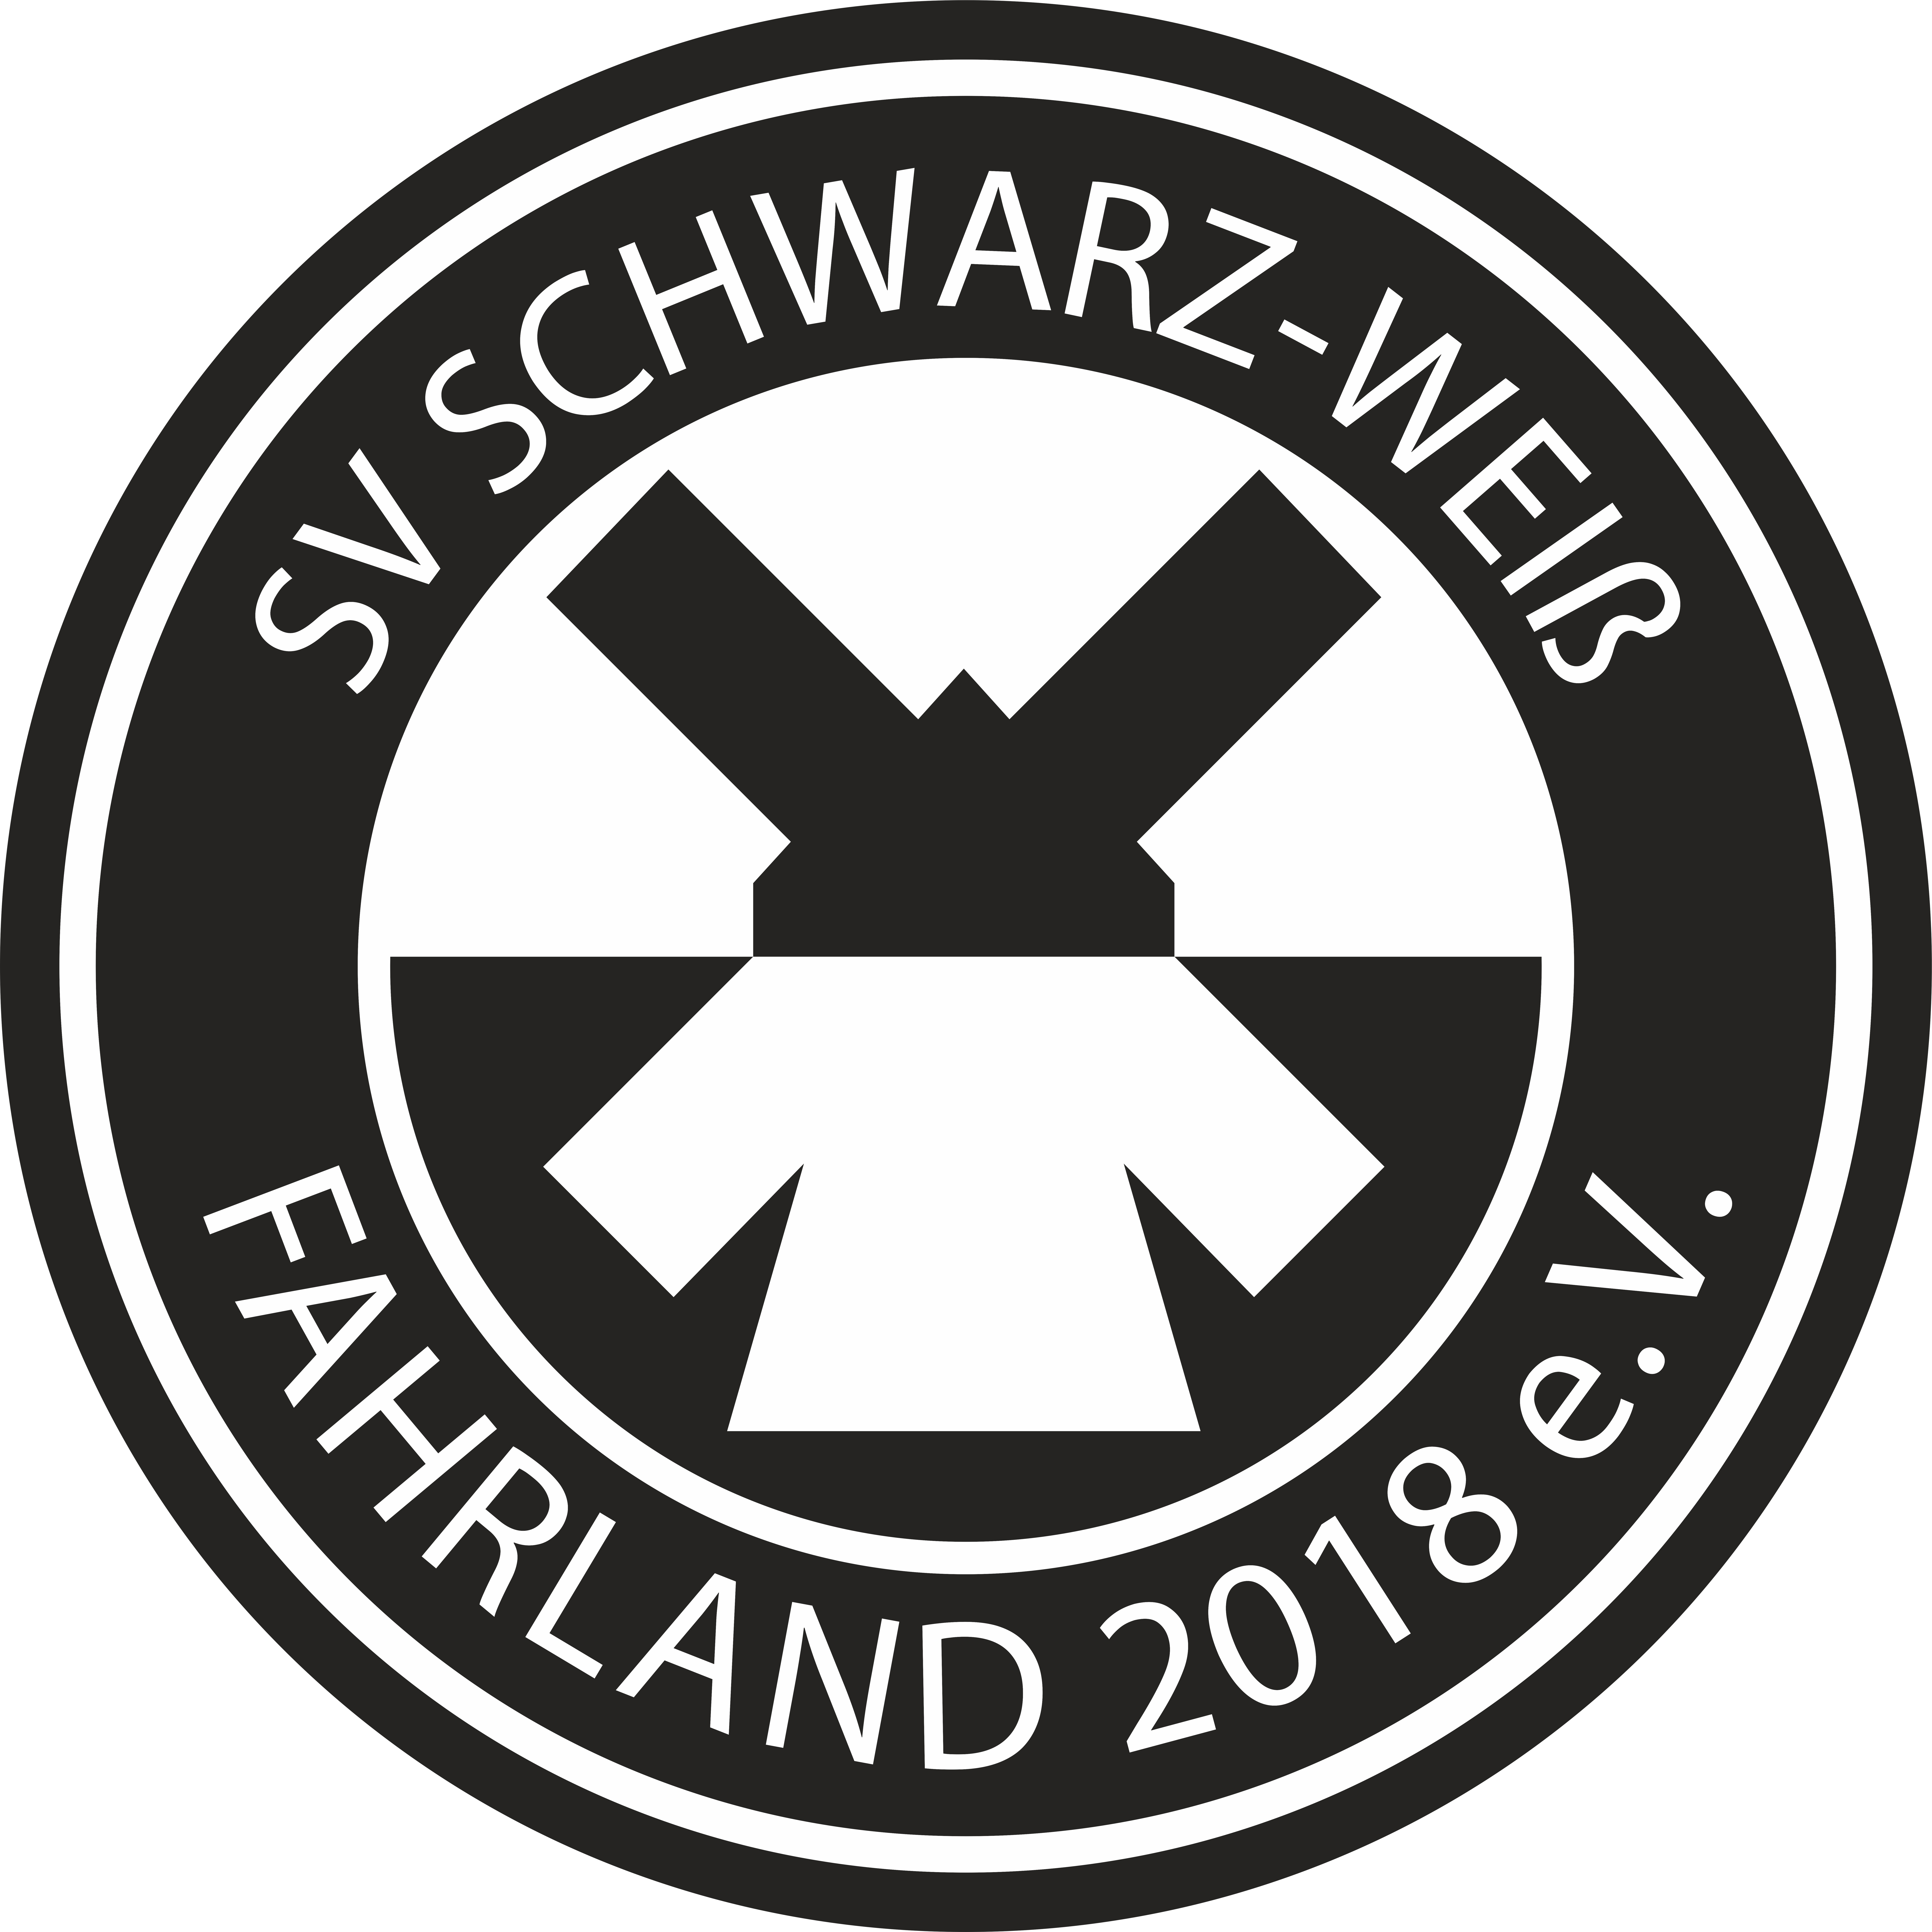 Schwarz-Weiß Fahrland Logo